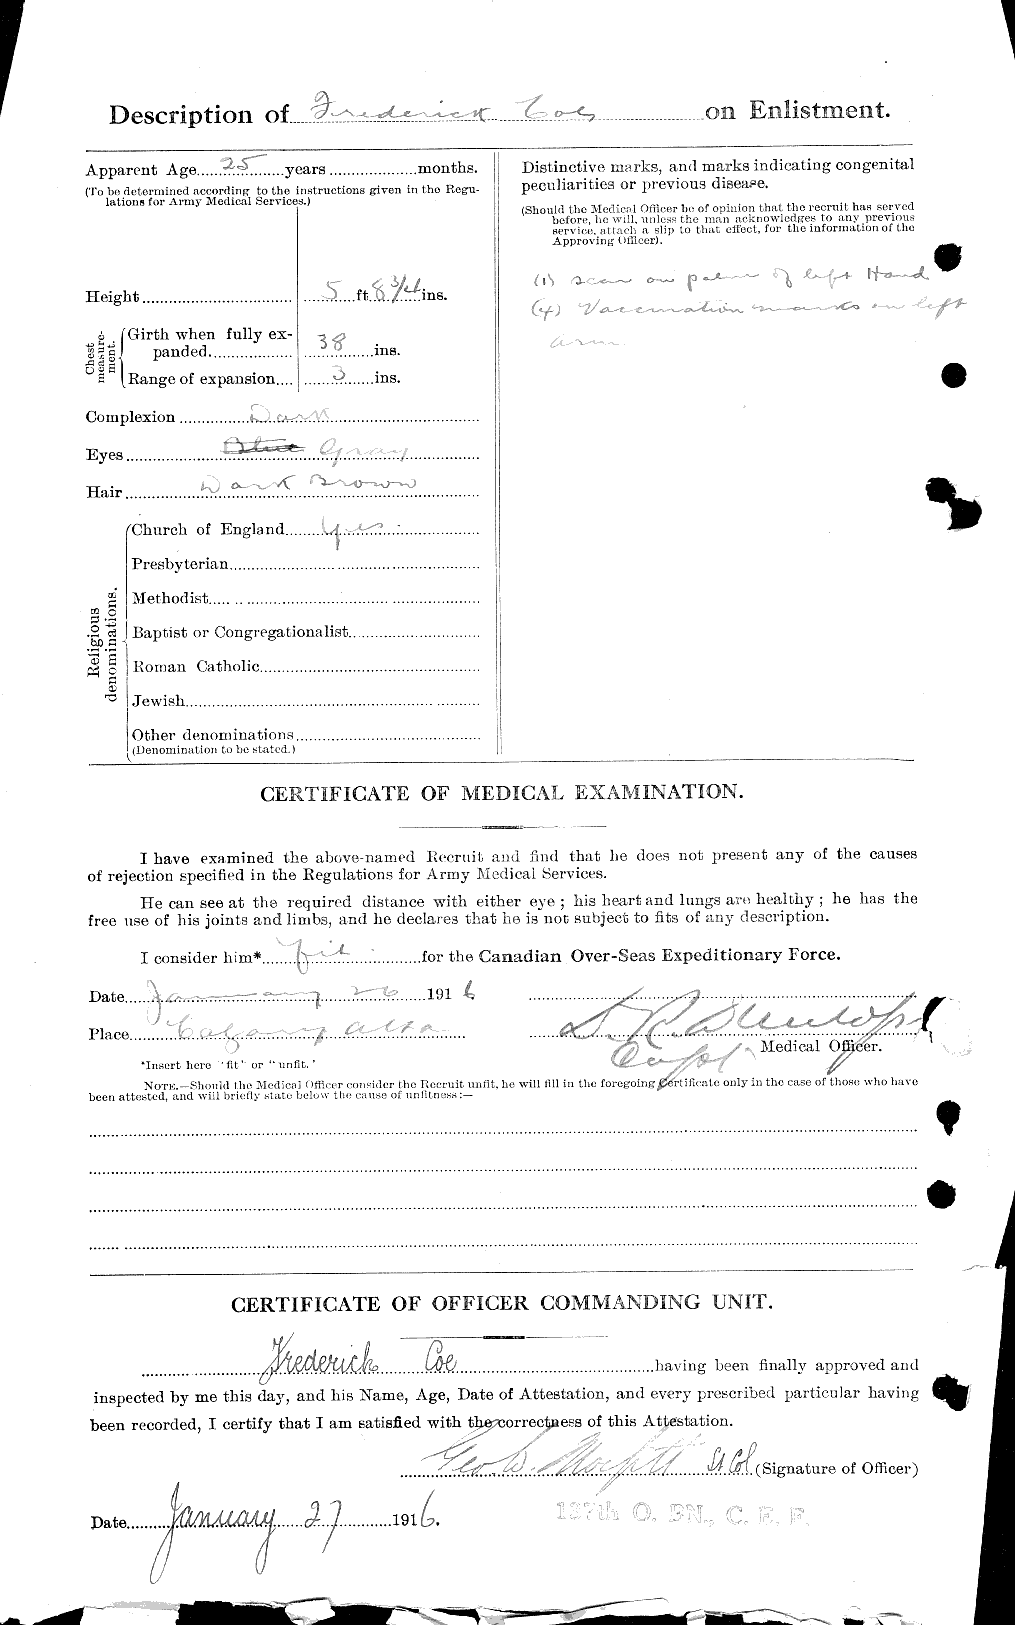 Dossiers du Personnel de la Première Guerre mondiale - CEC 026948b